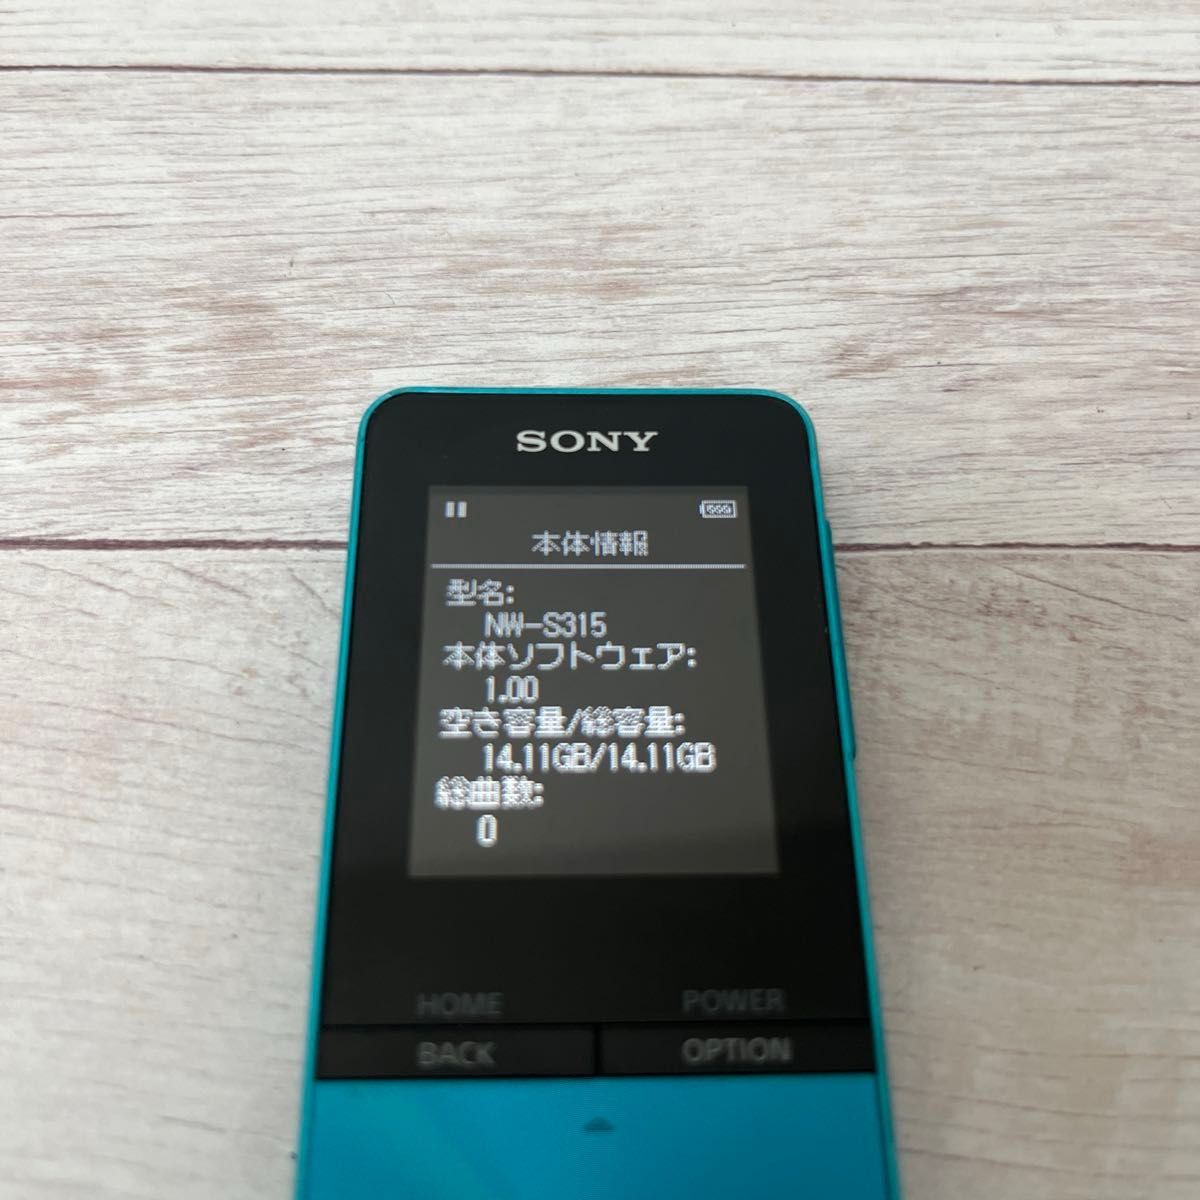 SONY WALKMAN NW-S315  ソニー ウォークマン デジタルミュージックプレーヤー 動作確認済み